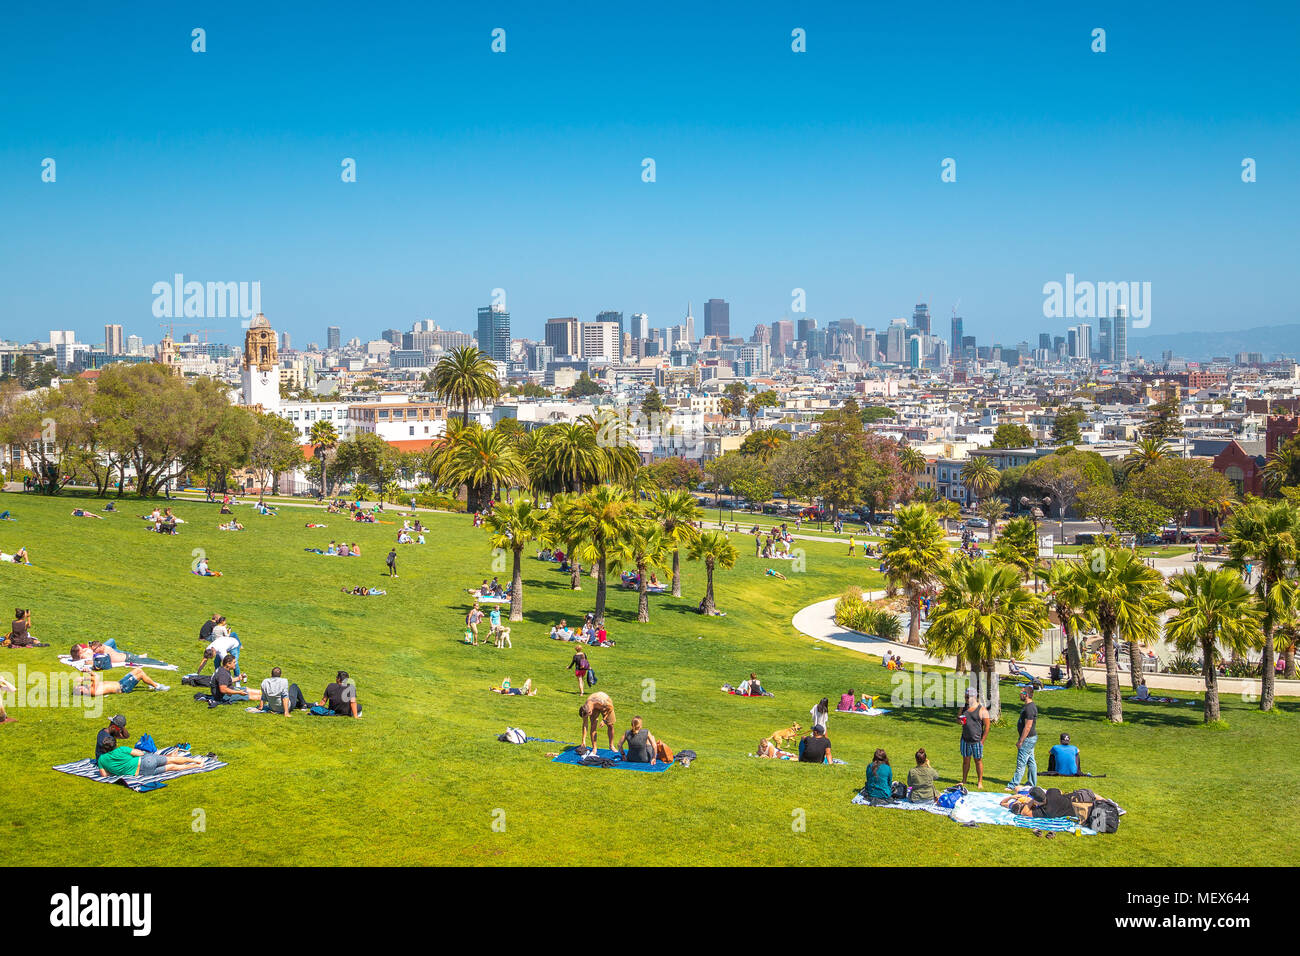 Le persone che si godono il sole in una bella giornata con il cielo limpido con lo skyline di San Francisco in background, CALIFORNIA, STATI UNITI D'AMERICA Foto Stock